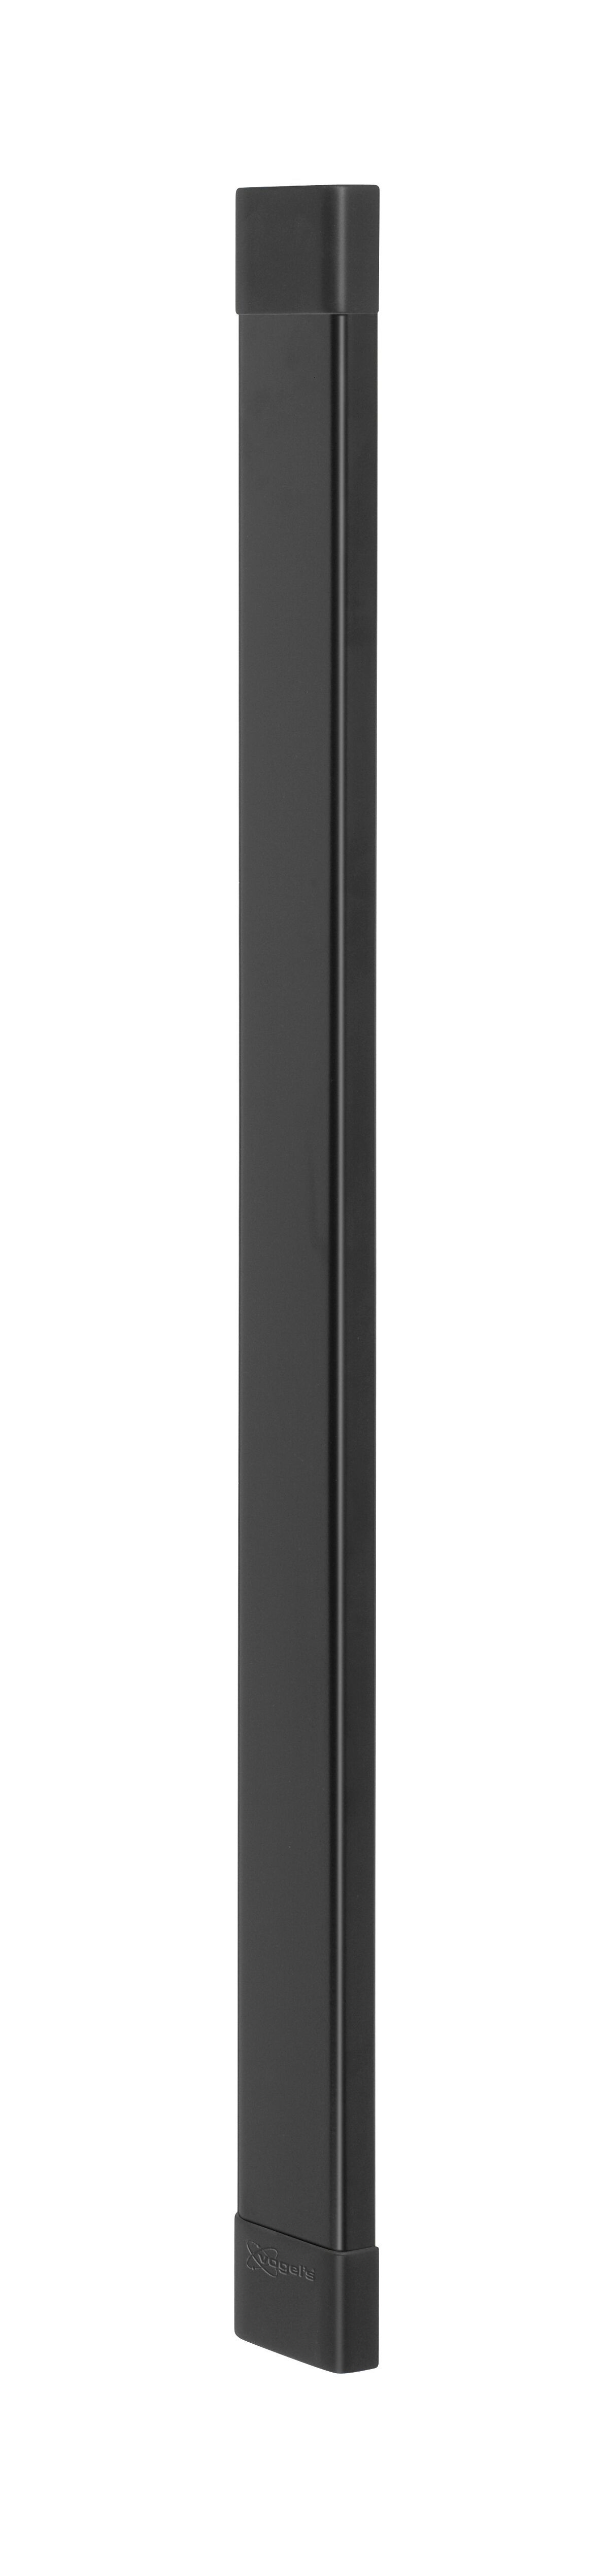 Vogel's CABLE 8 Chemin de câbles (noir) - Max. nombre de câbles à tenir : Jusqu’à 8 câbles - Longueur : 94 cm - Product